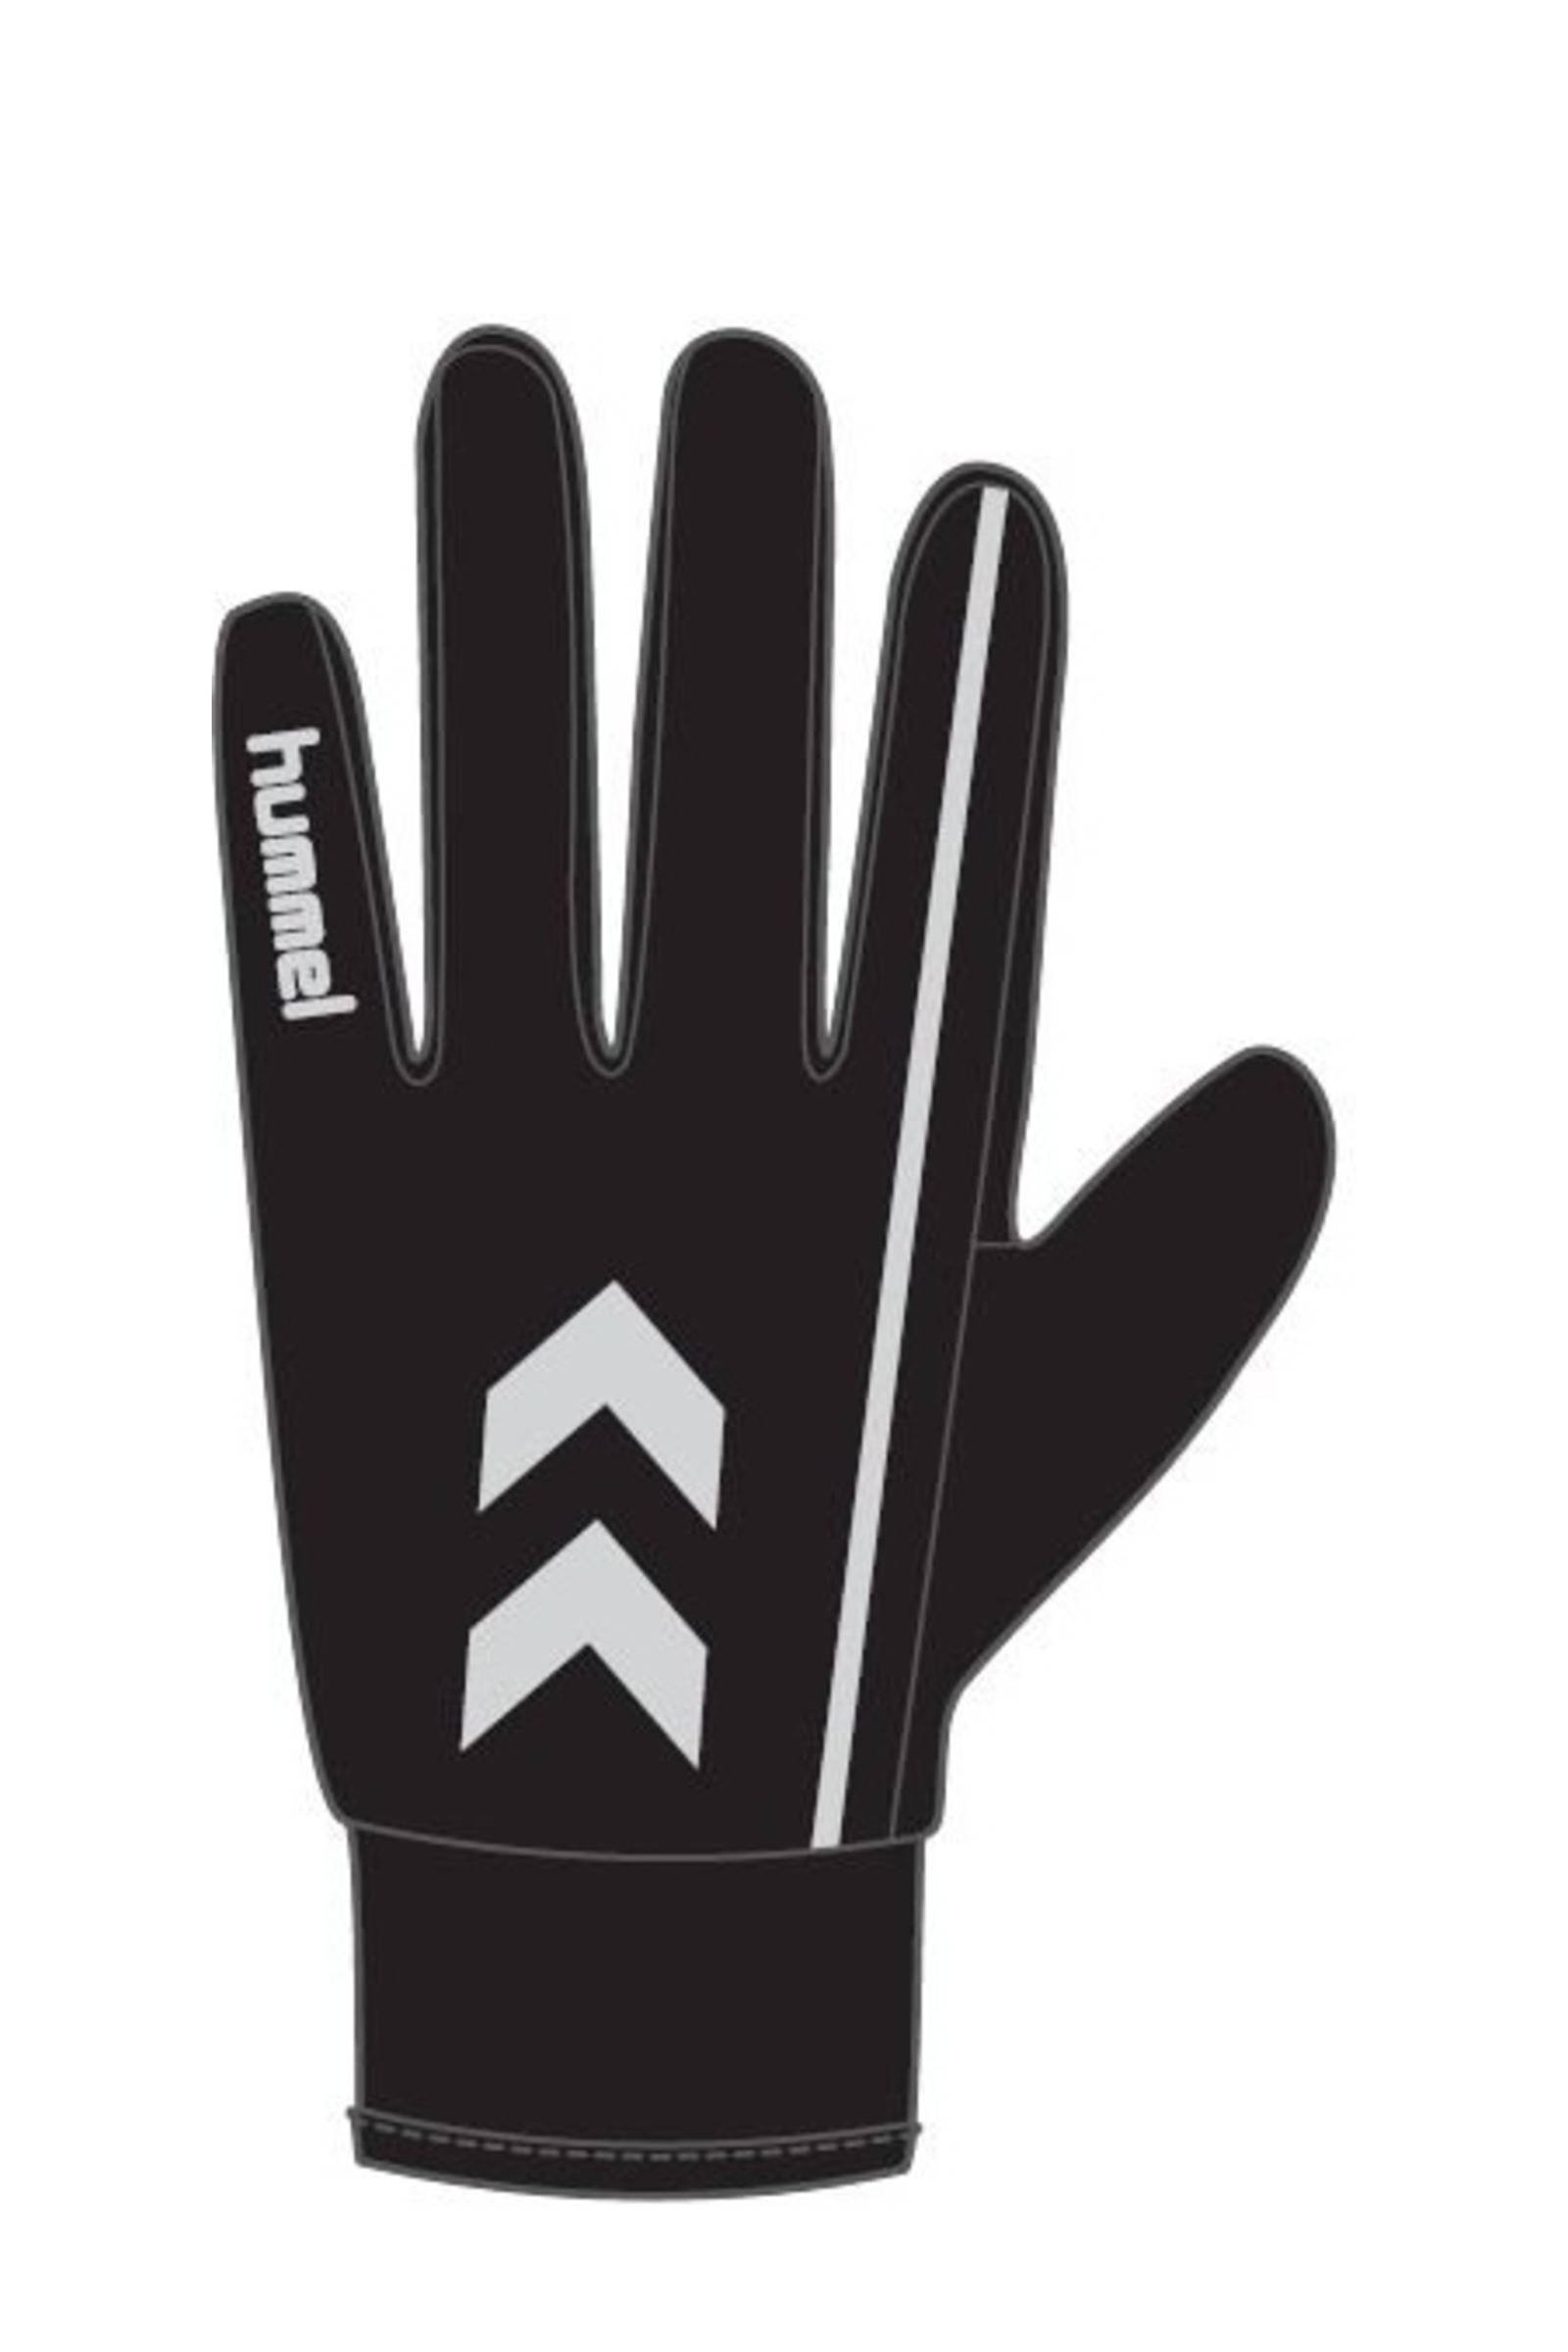 Hummel Authentic Noir Player Glove online kopen